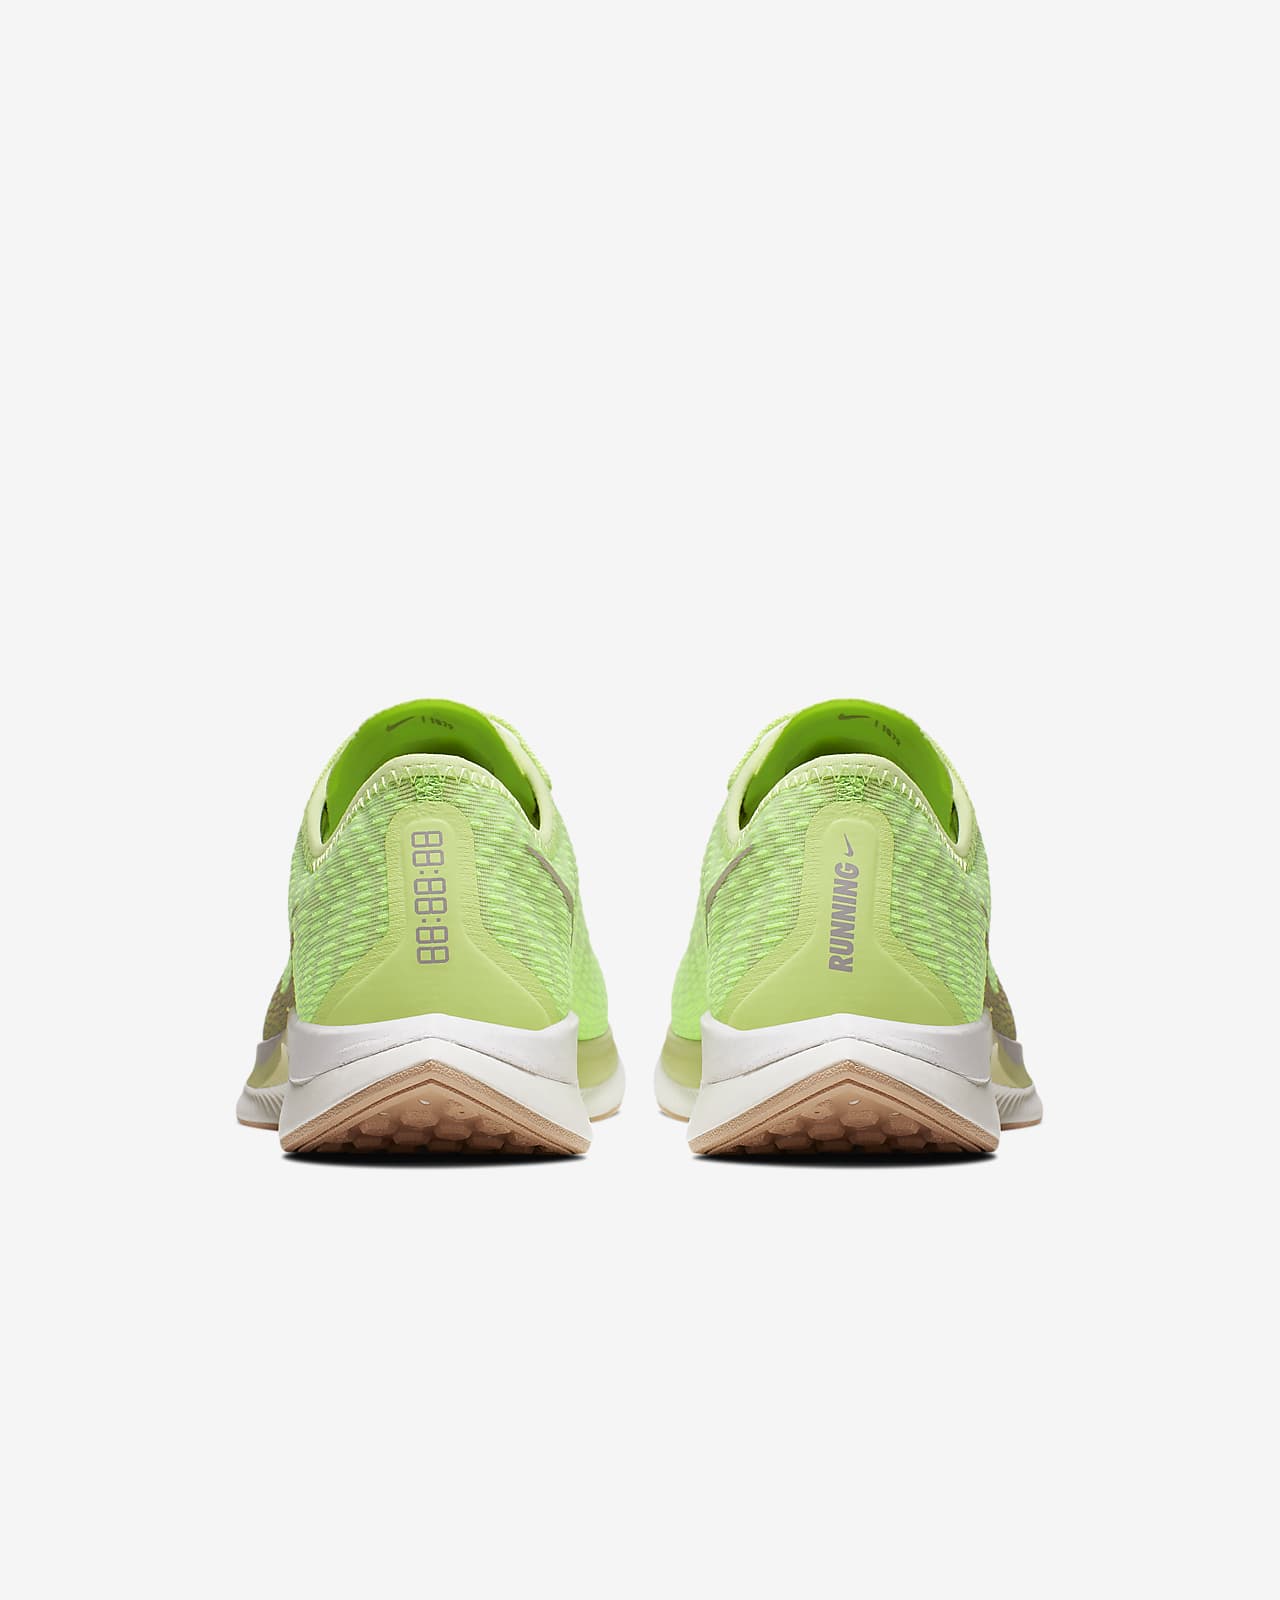 Nike Zoom Pegasus Turbo 2 Women's Running Shoes افضل زيت زيتون للاكل